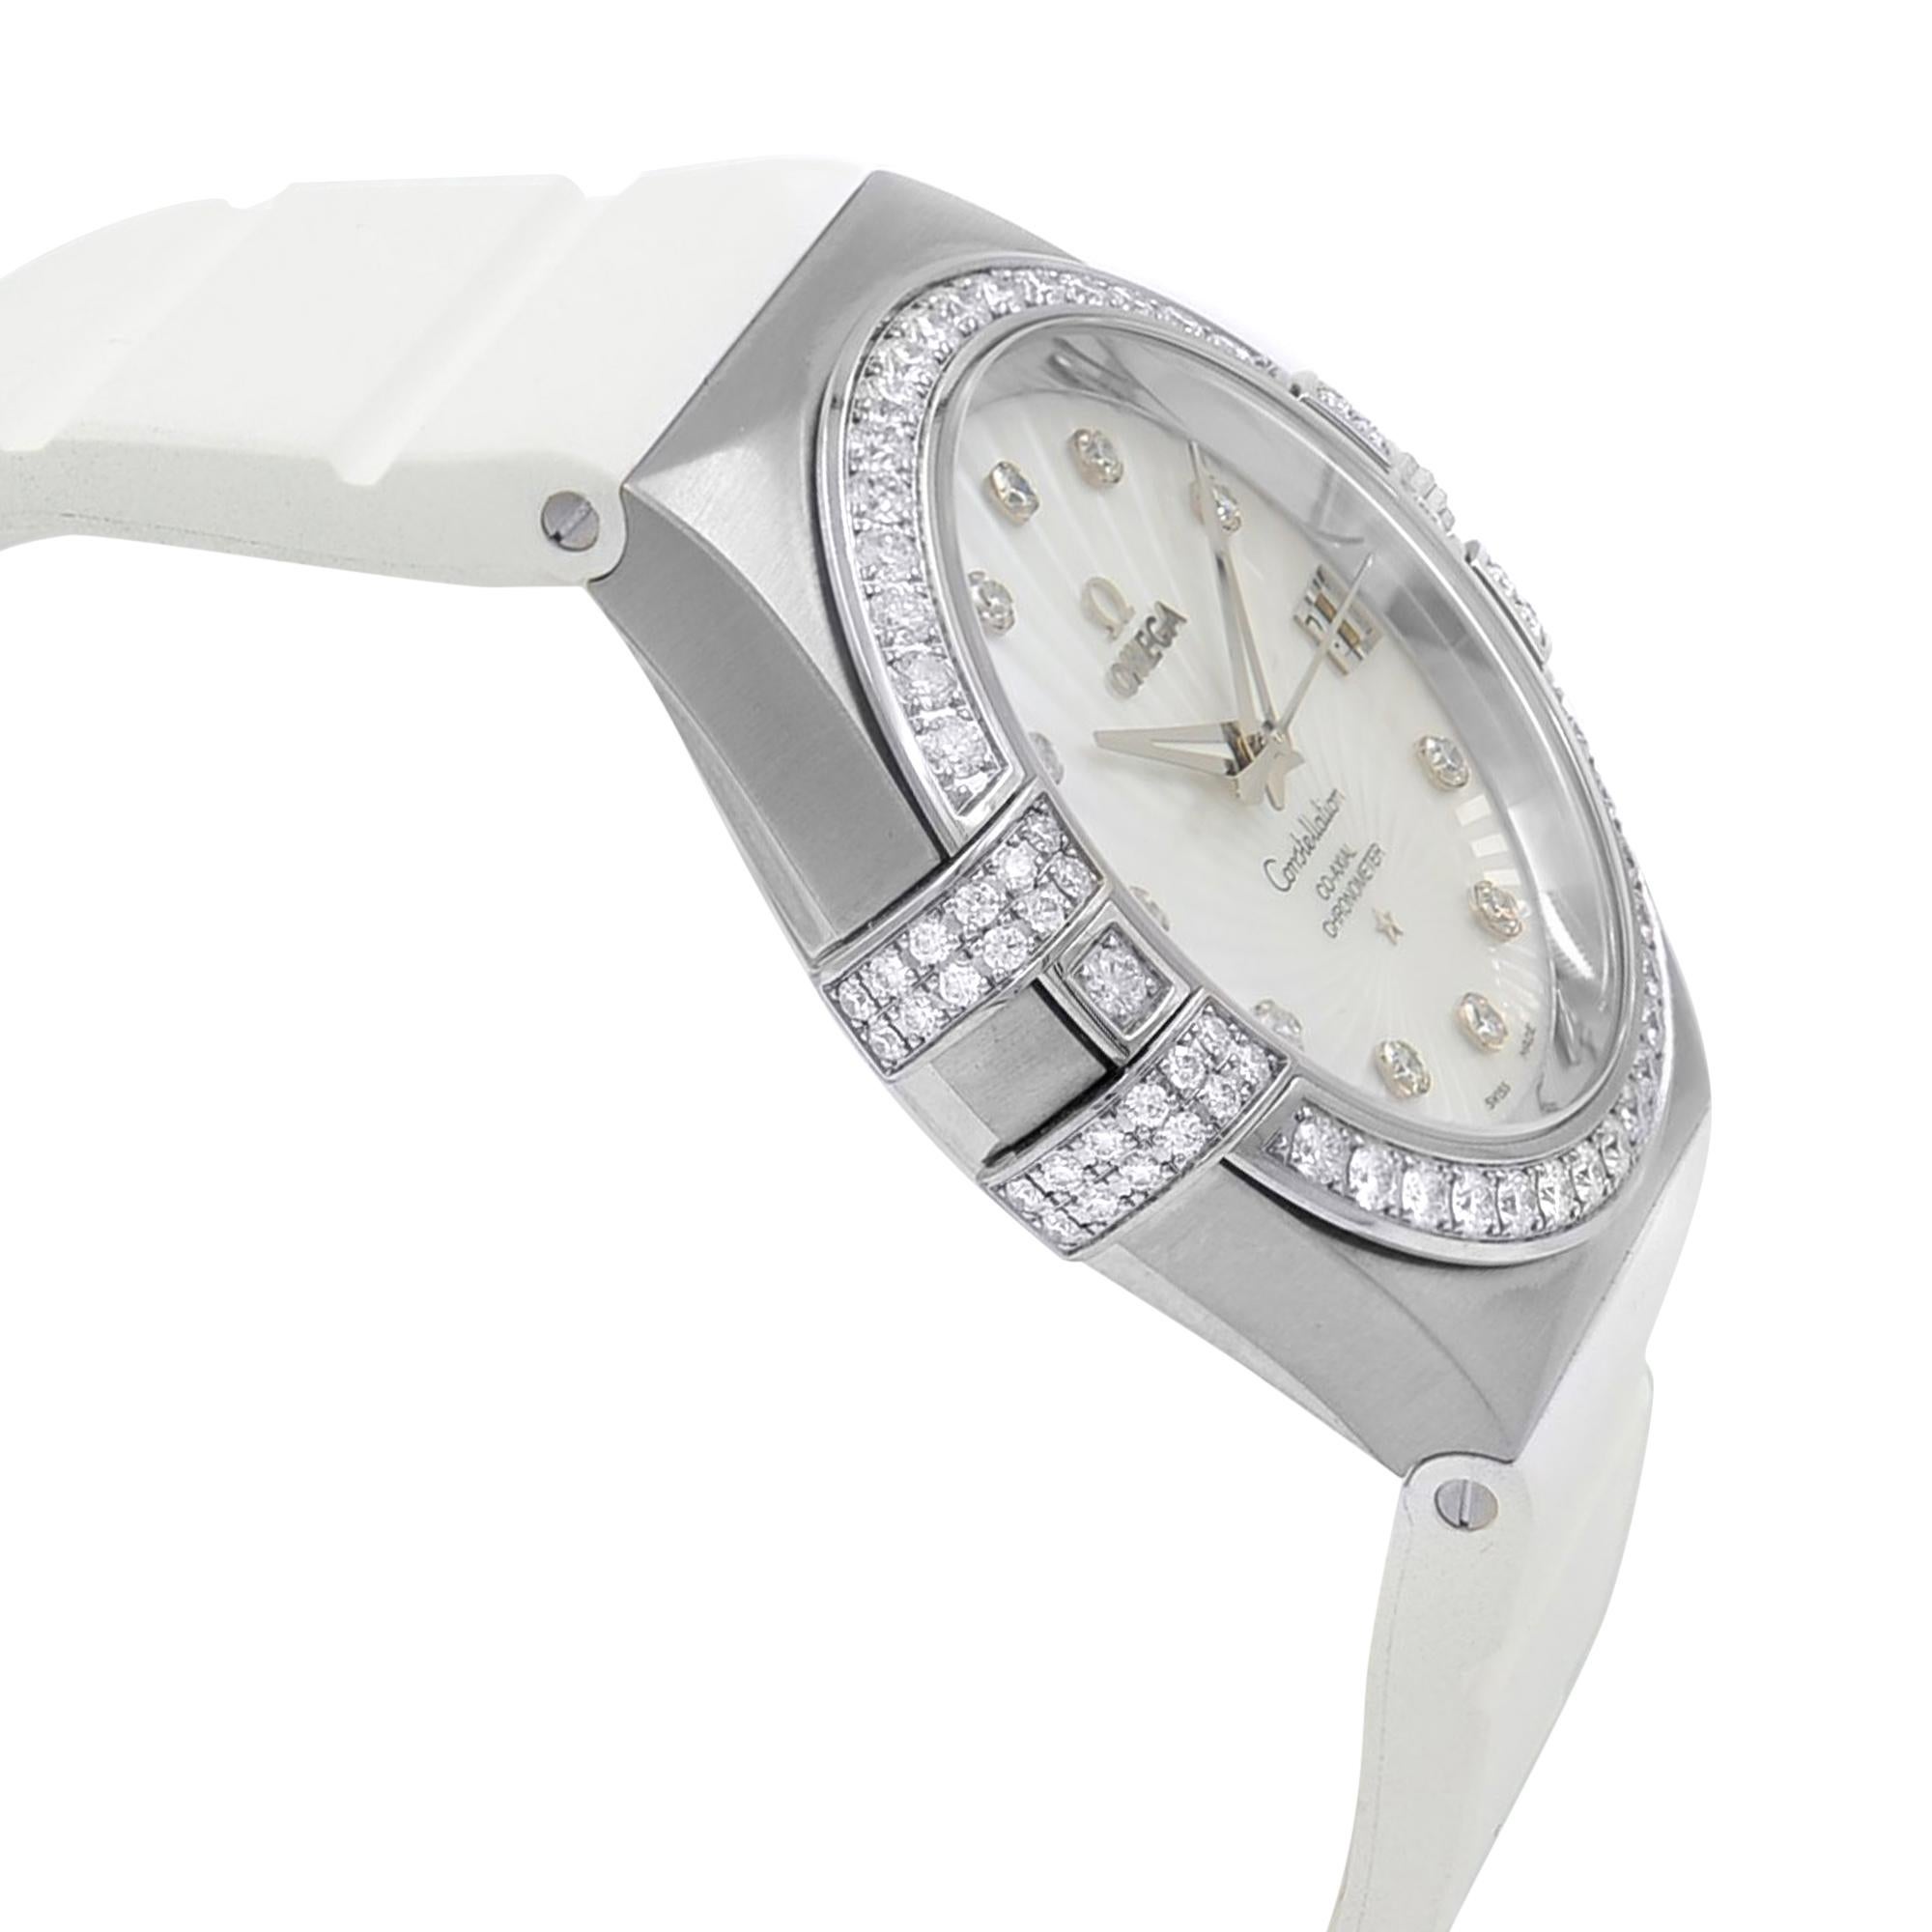 Women's Omega Constellation 18 Karat Gold Diamond MOP Dial Watch 123.57.35.20.55.005